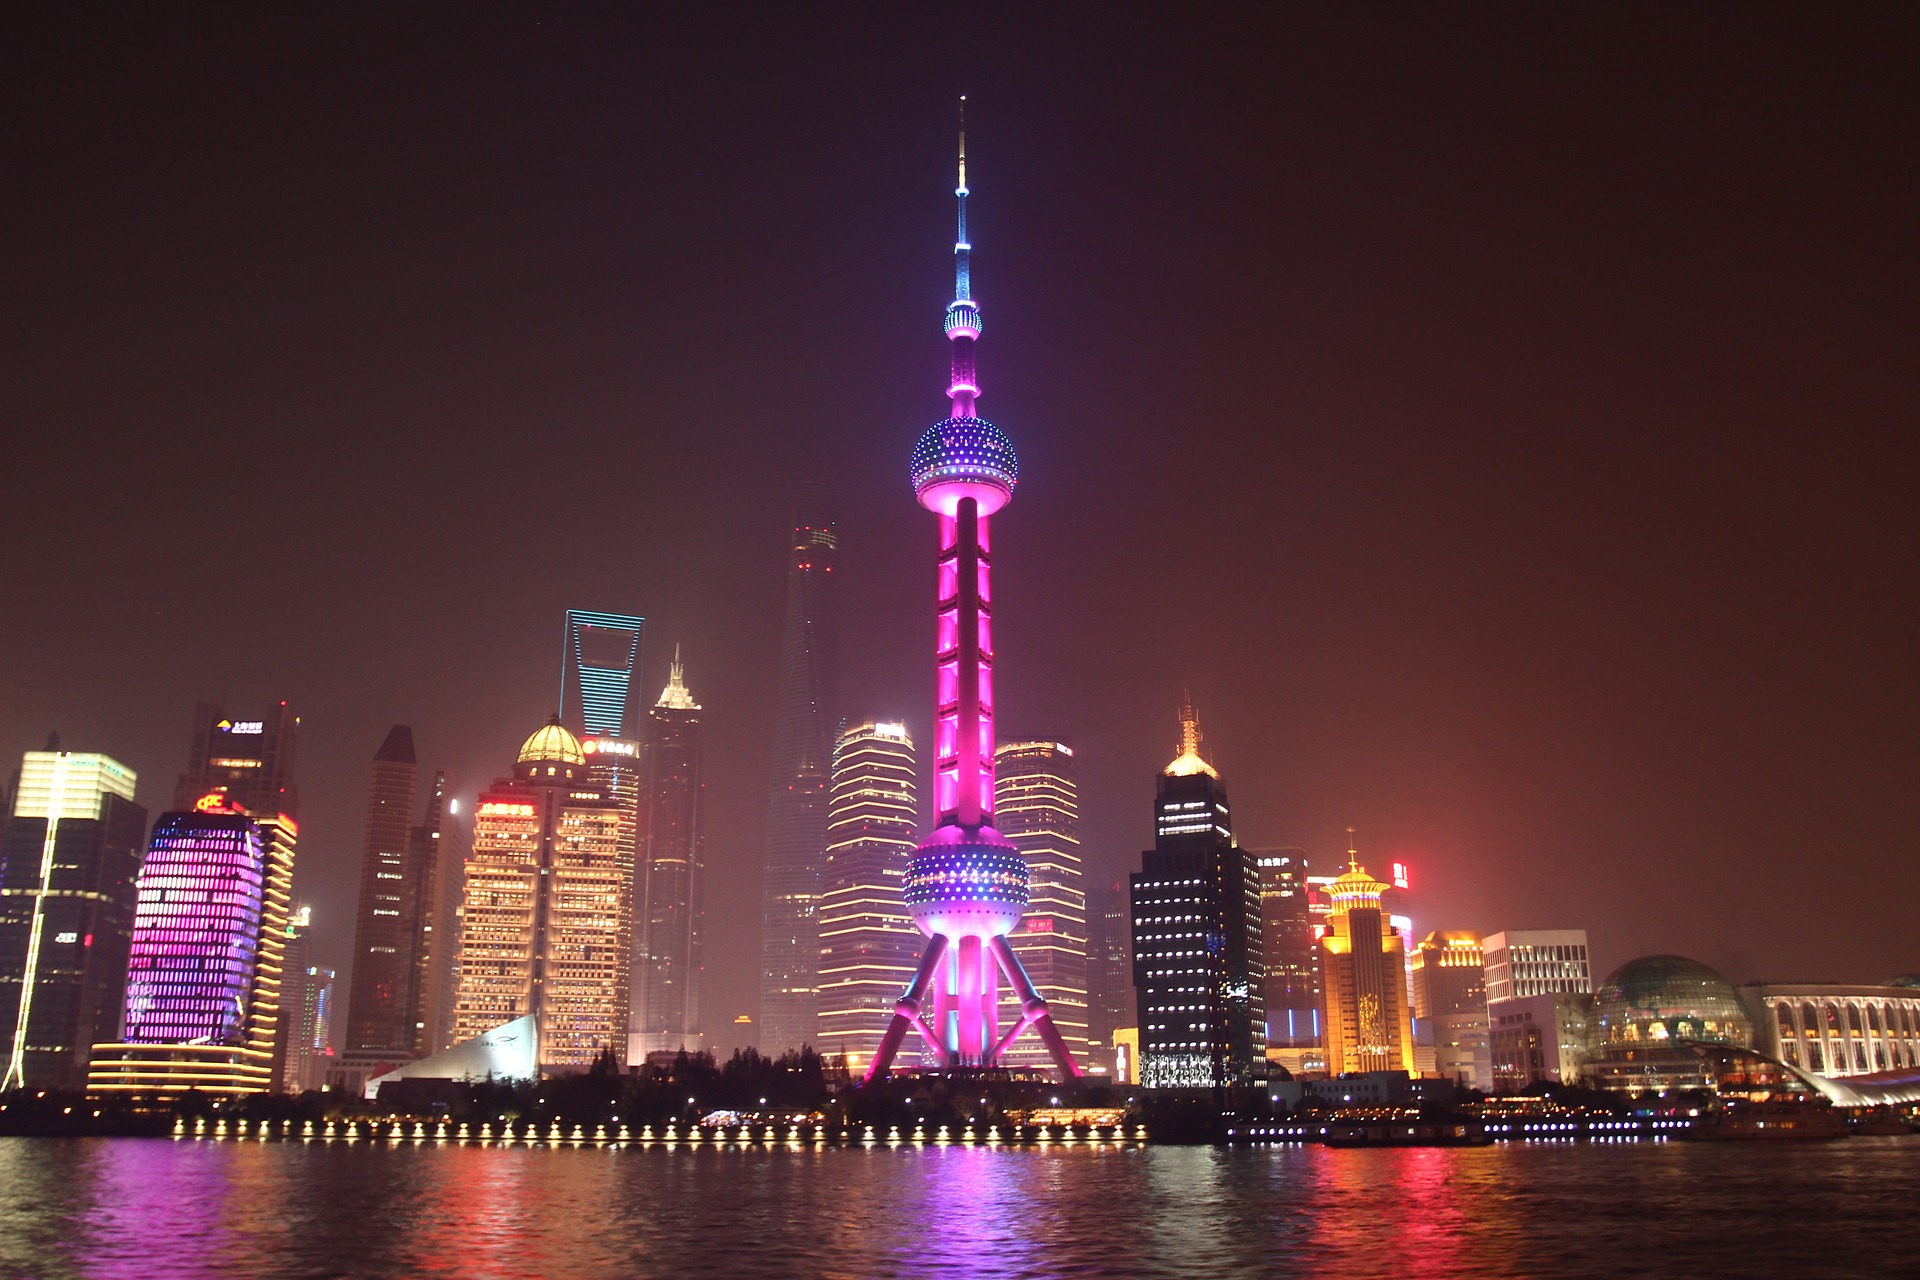 Le DEVCON2 se tiendra à Shanghai du 19 au 21 septembre 2016, avant le Global Blockchain Summit